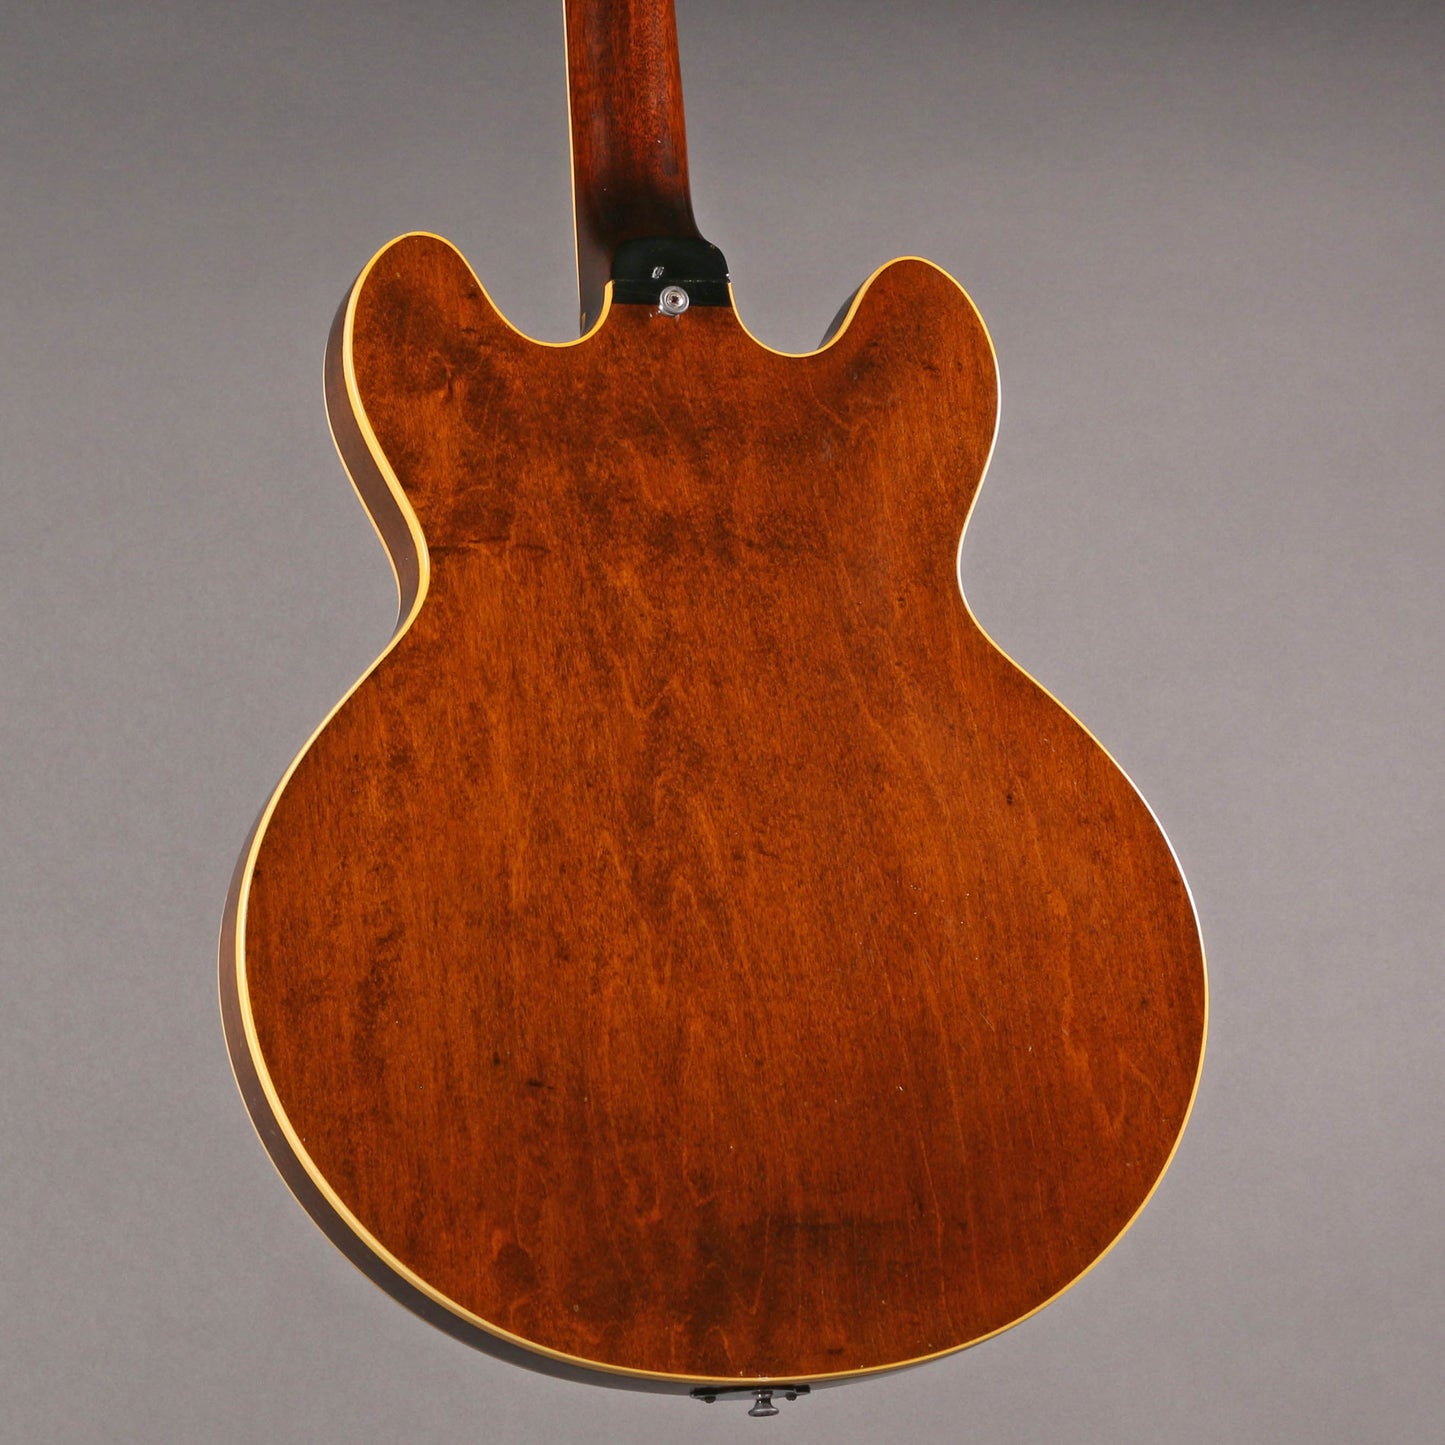 1965 Gibson ES-330TD